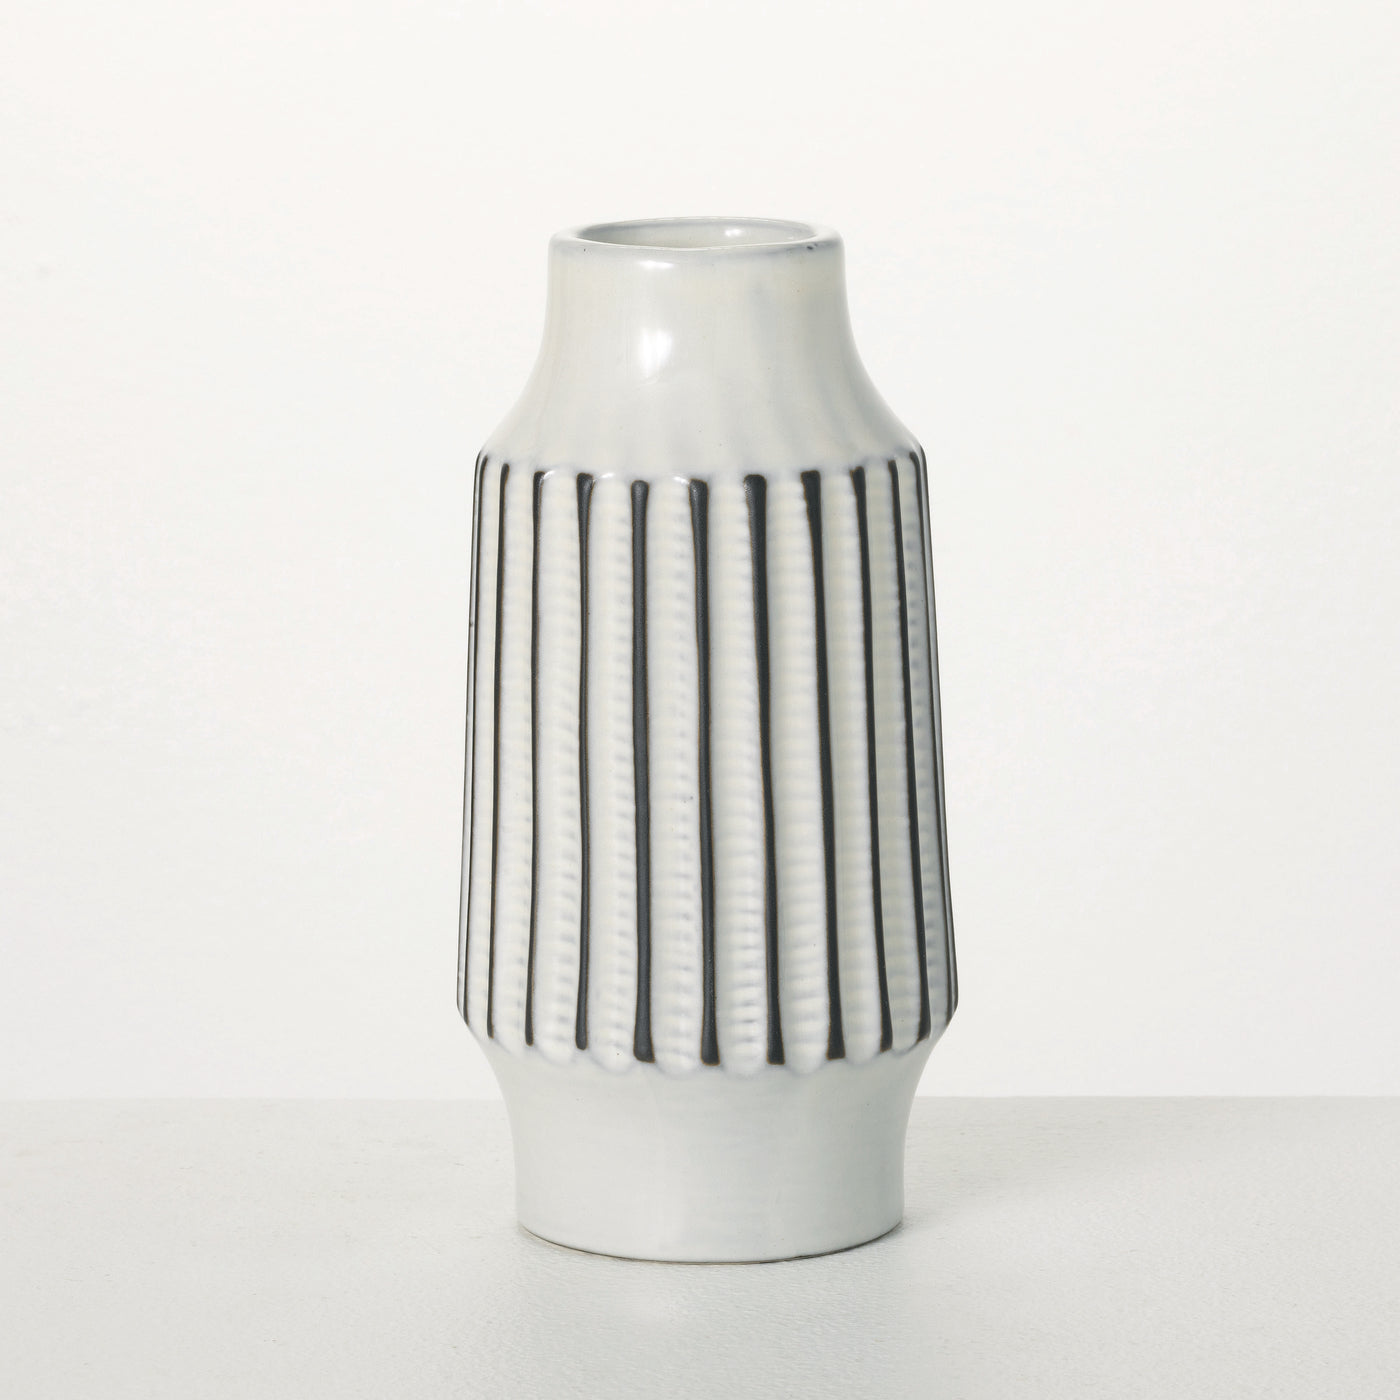 8" Textured Tall Modern Vase